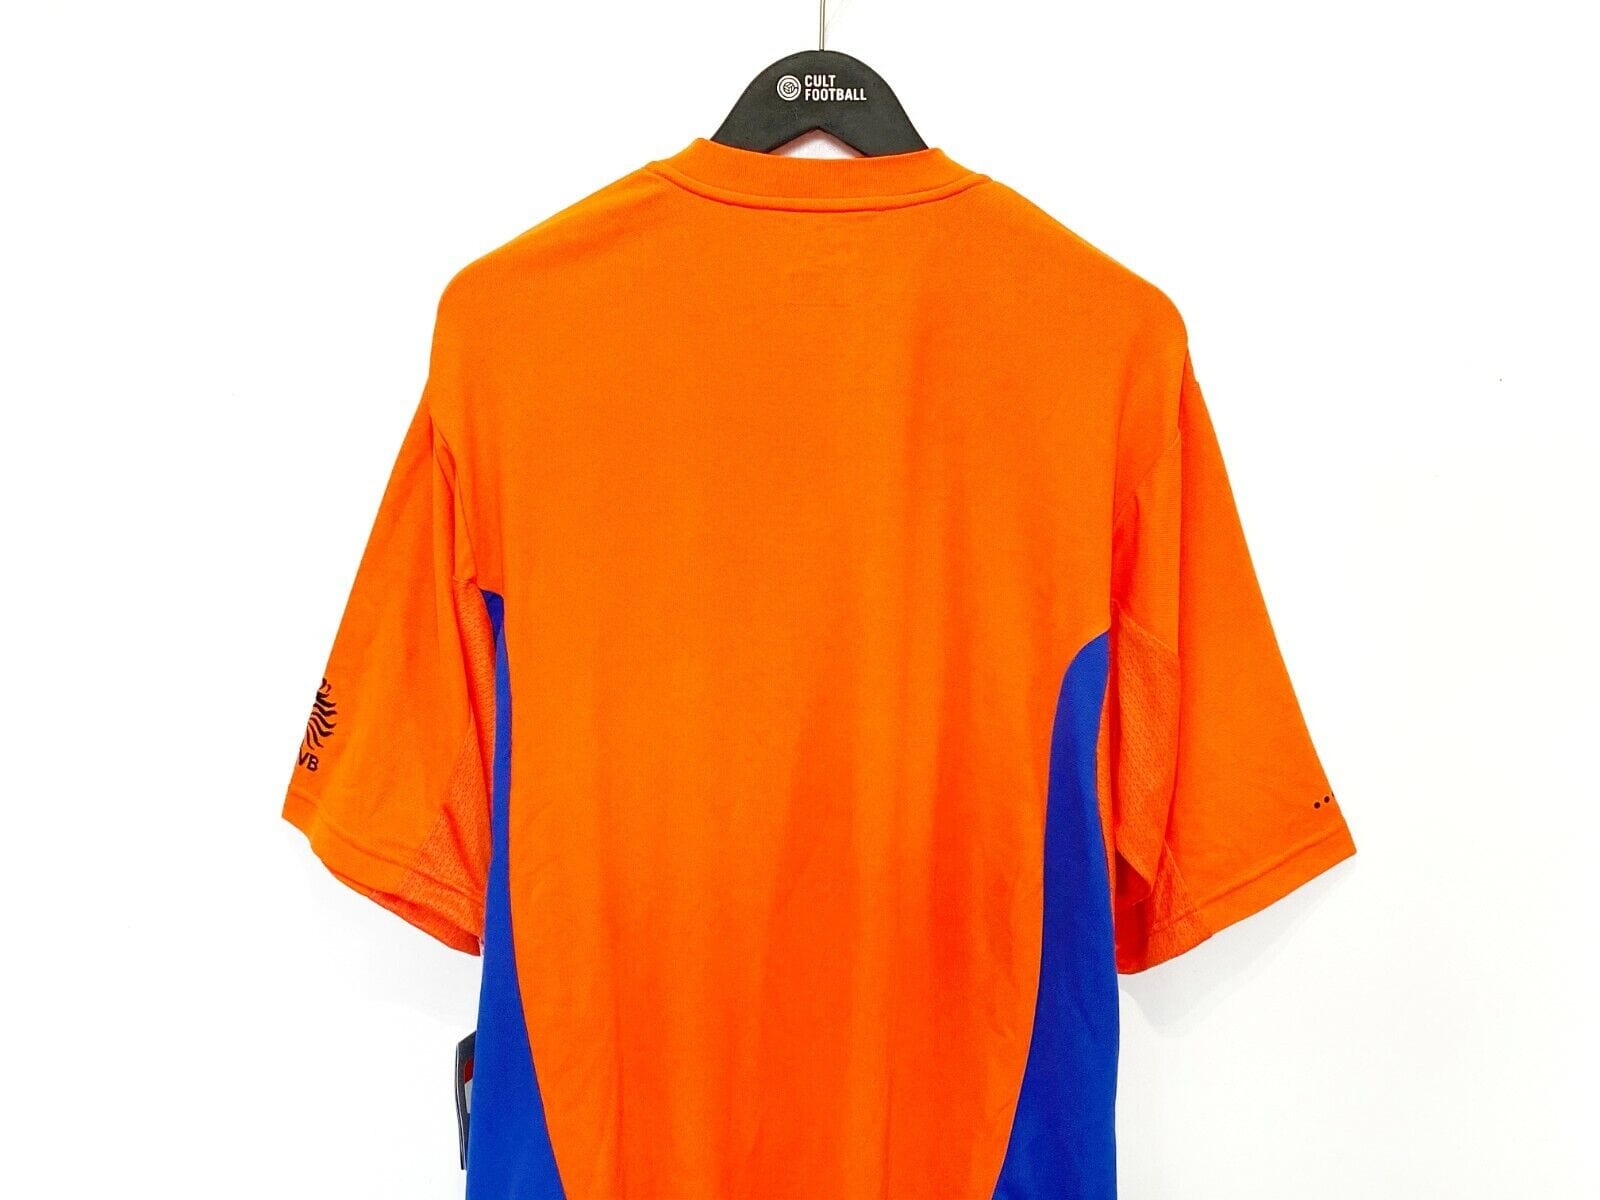 2000/01 HOLLAND Vintage Nike Home Football Training Shirt (L) BNWT Euro 2000